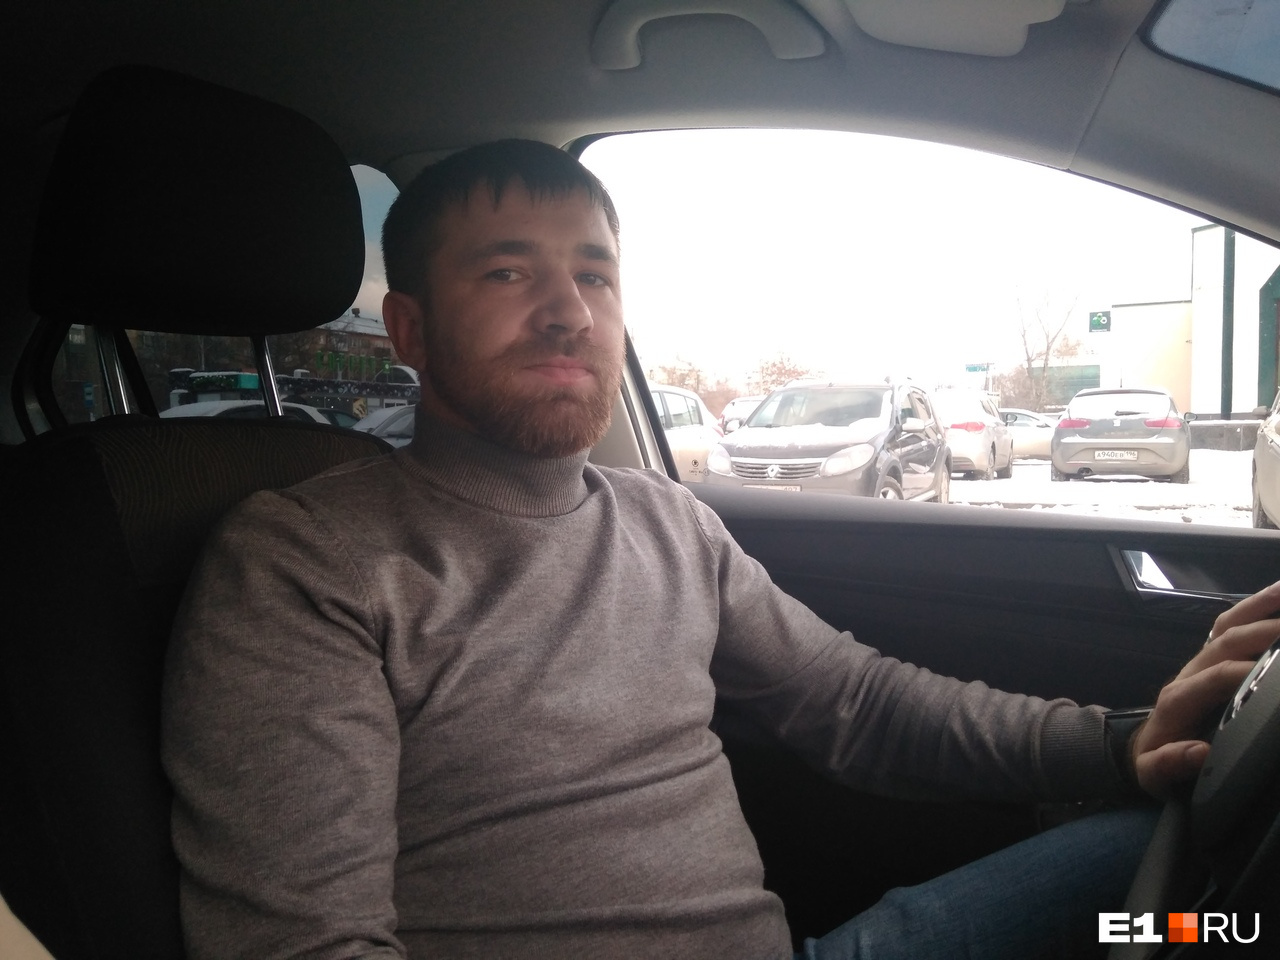 У Павла больше 30 машин, которые он сдает в аренду для работы в «Яндекс.Такси», но формально владельцем таксопарка он не является